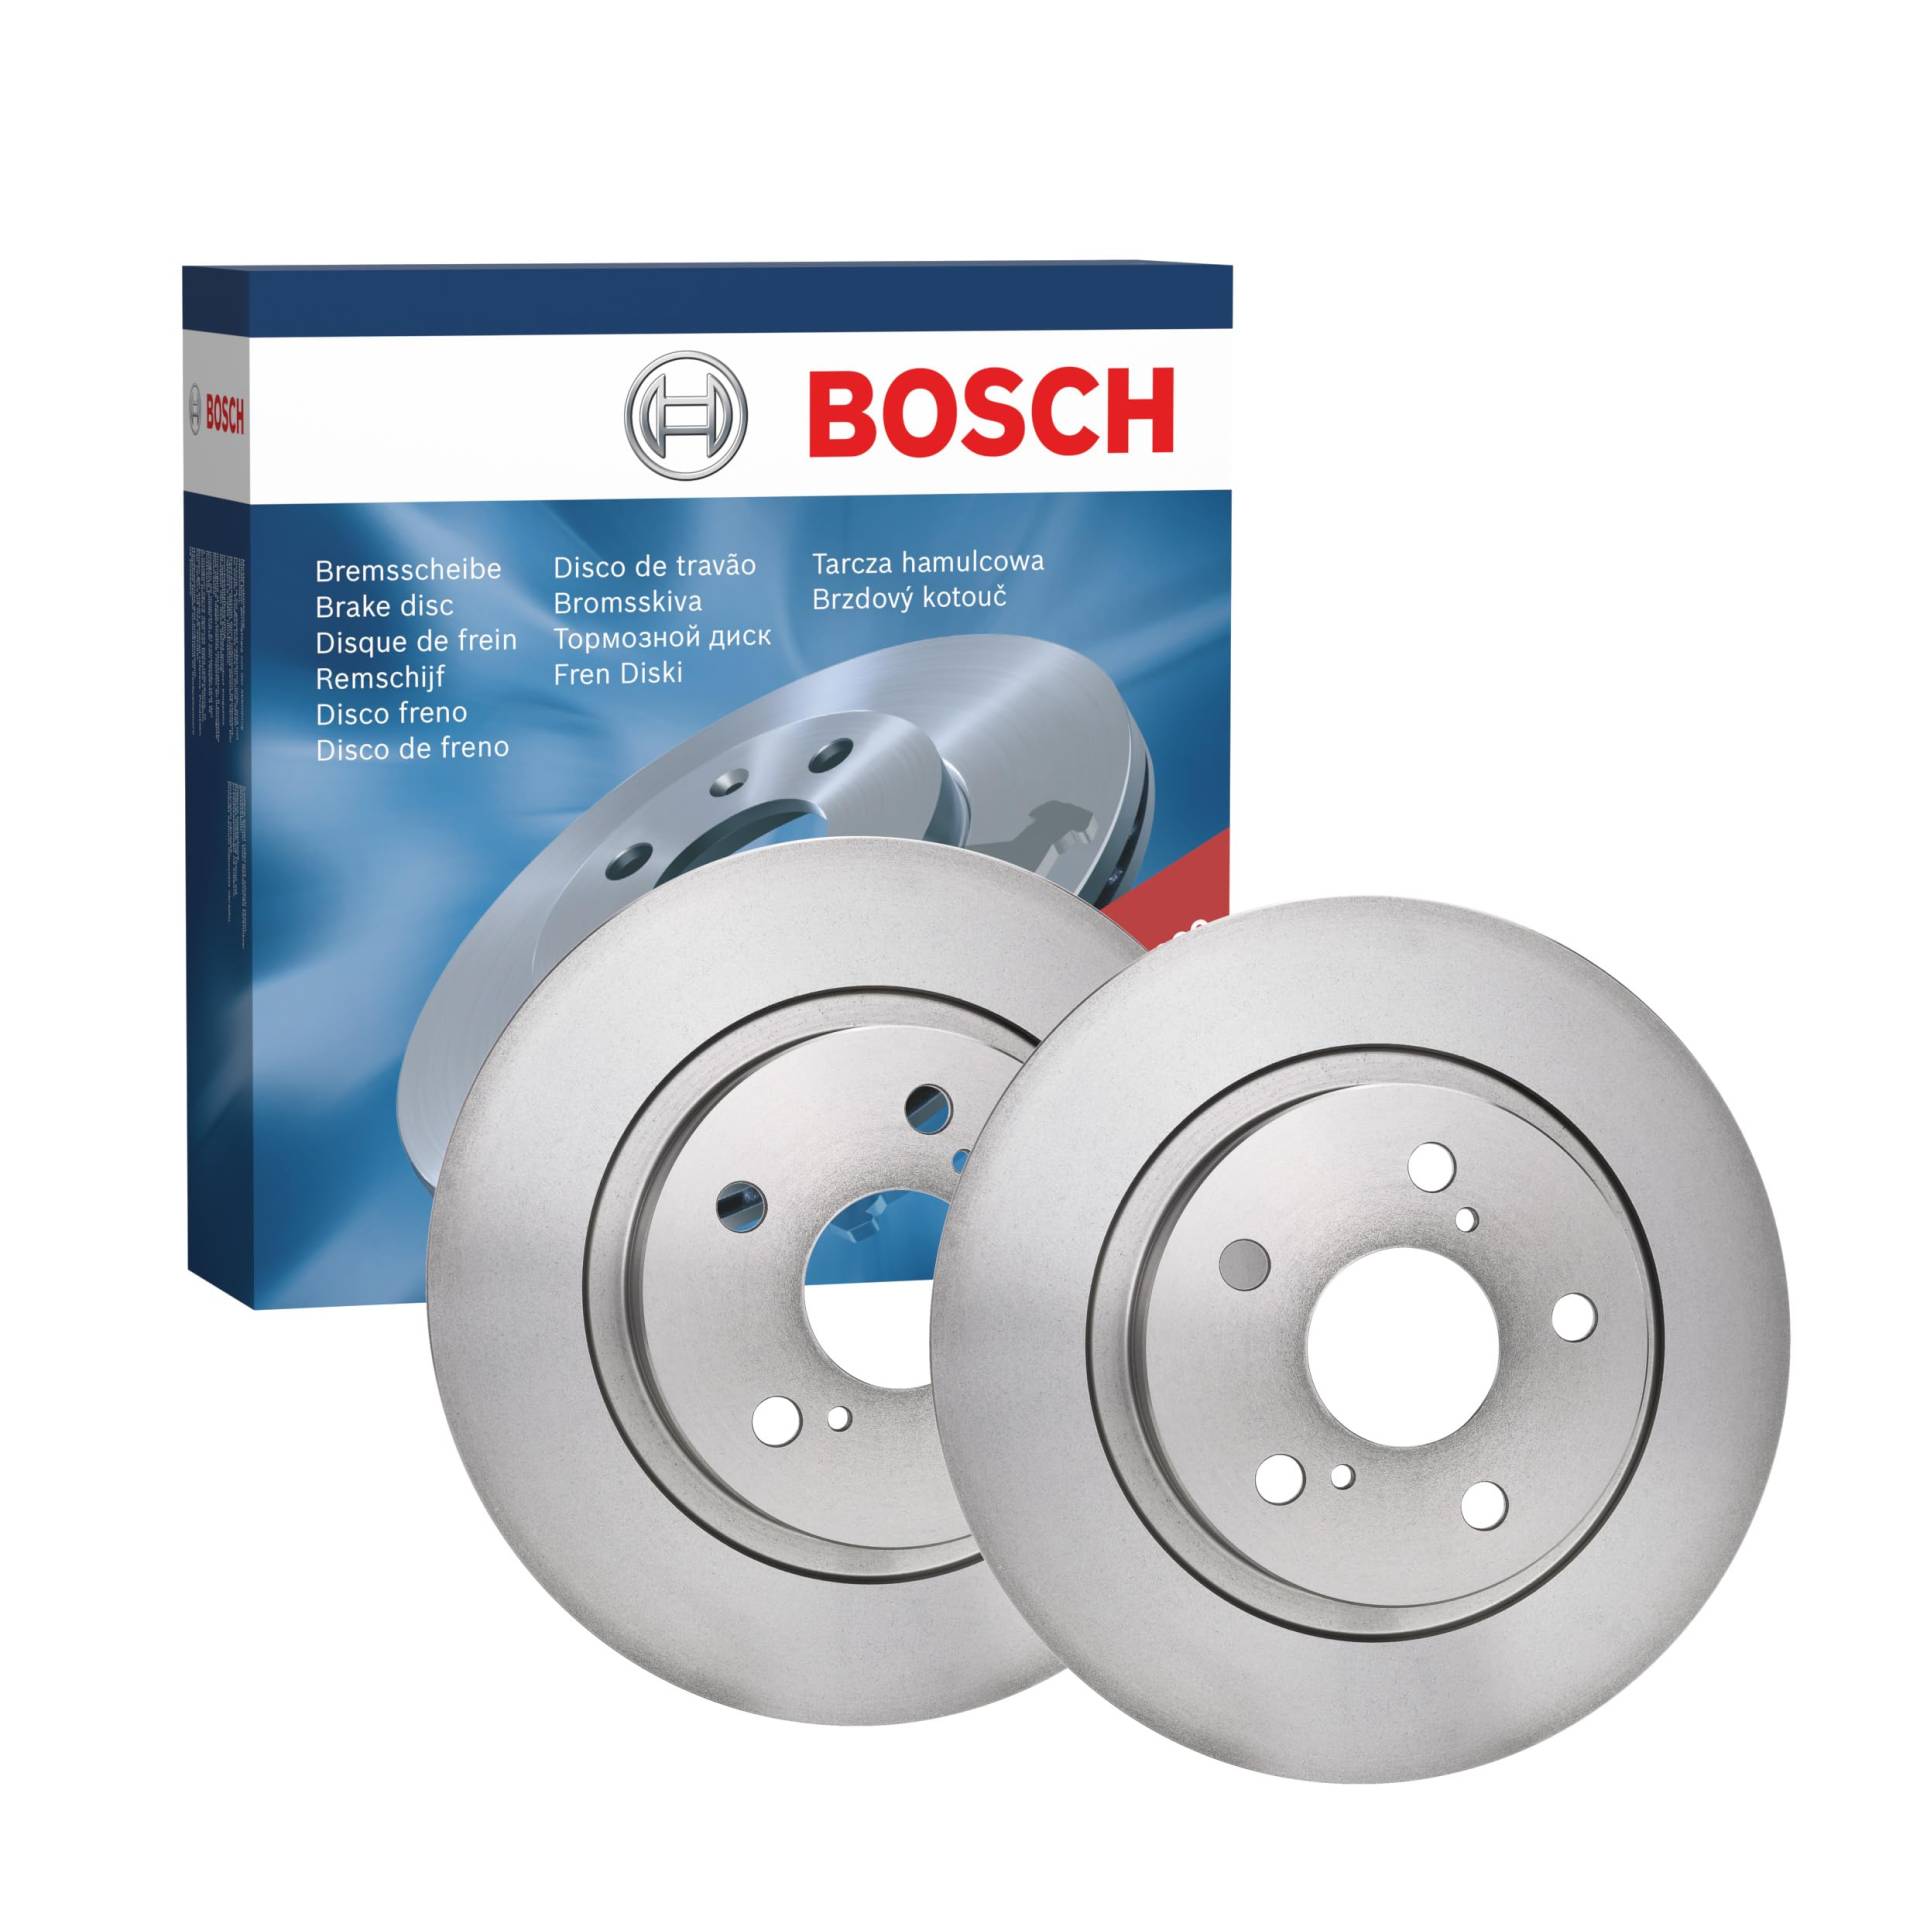 Bosch BD1500 Bremsscheiben - Hinterachse - ECE-R90 Zertifizierung - zwei Bremsscheiben pro Set von Bosch Automotive